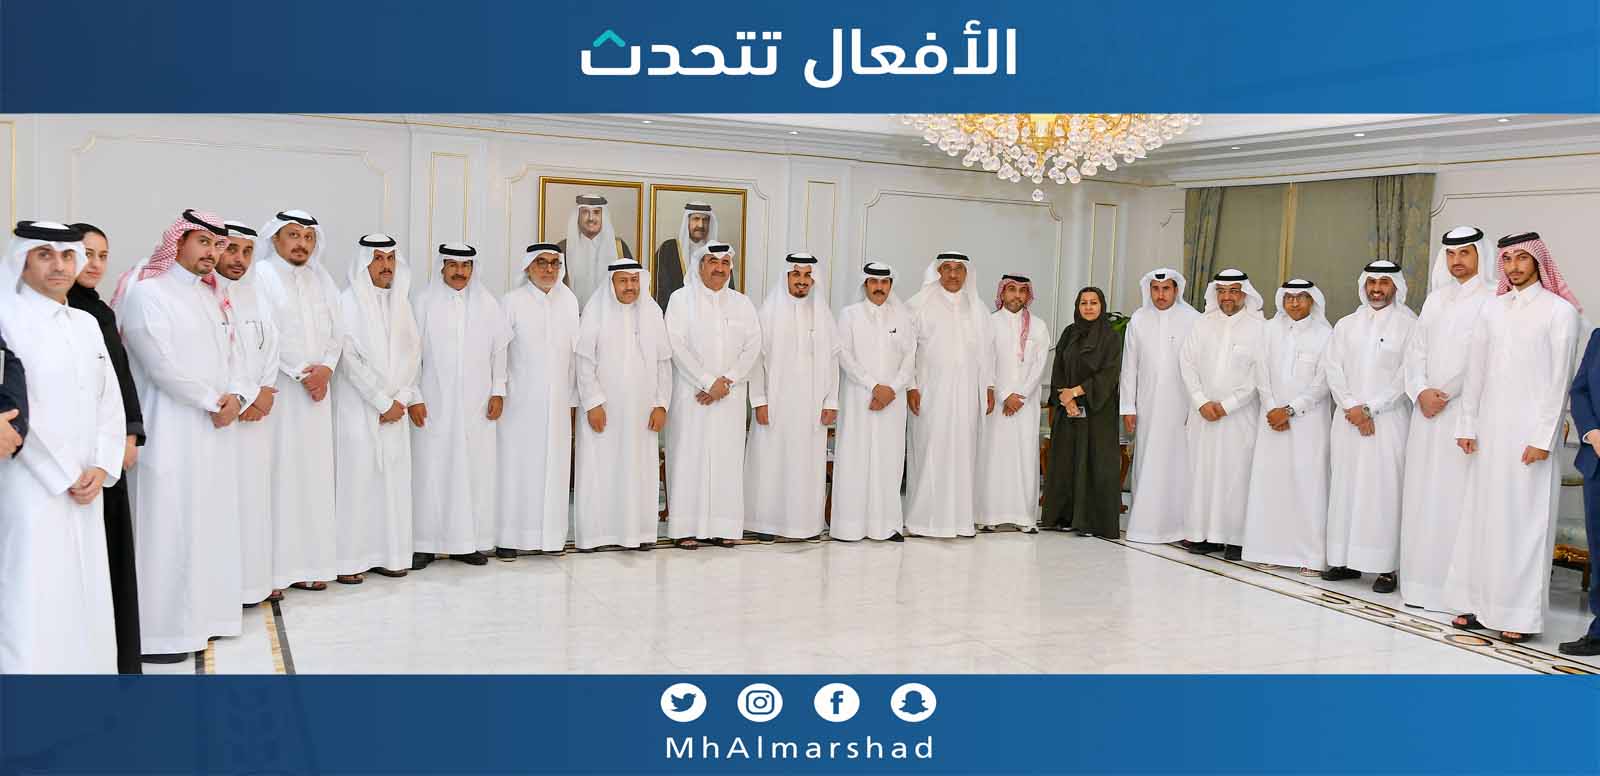 عقدت لجنة العقار بغرفة قطر برئاسة السيد عبد الرحمن بن عبد الجليل آل عبد الغني اجتماعا مع وفد اللجنة الوطنية العقارية باتحاد الغرف السعودية